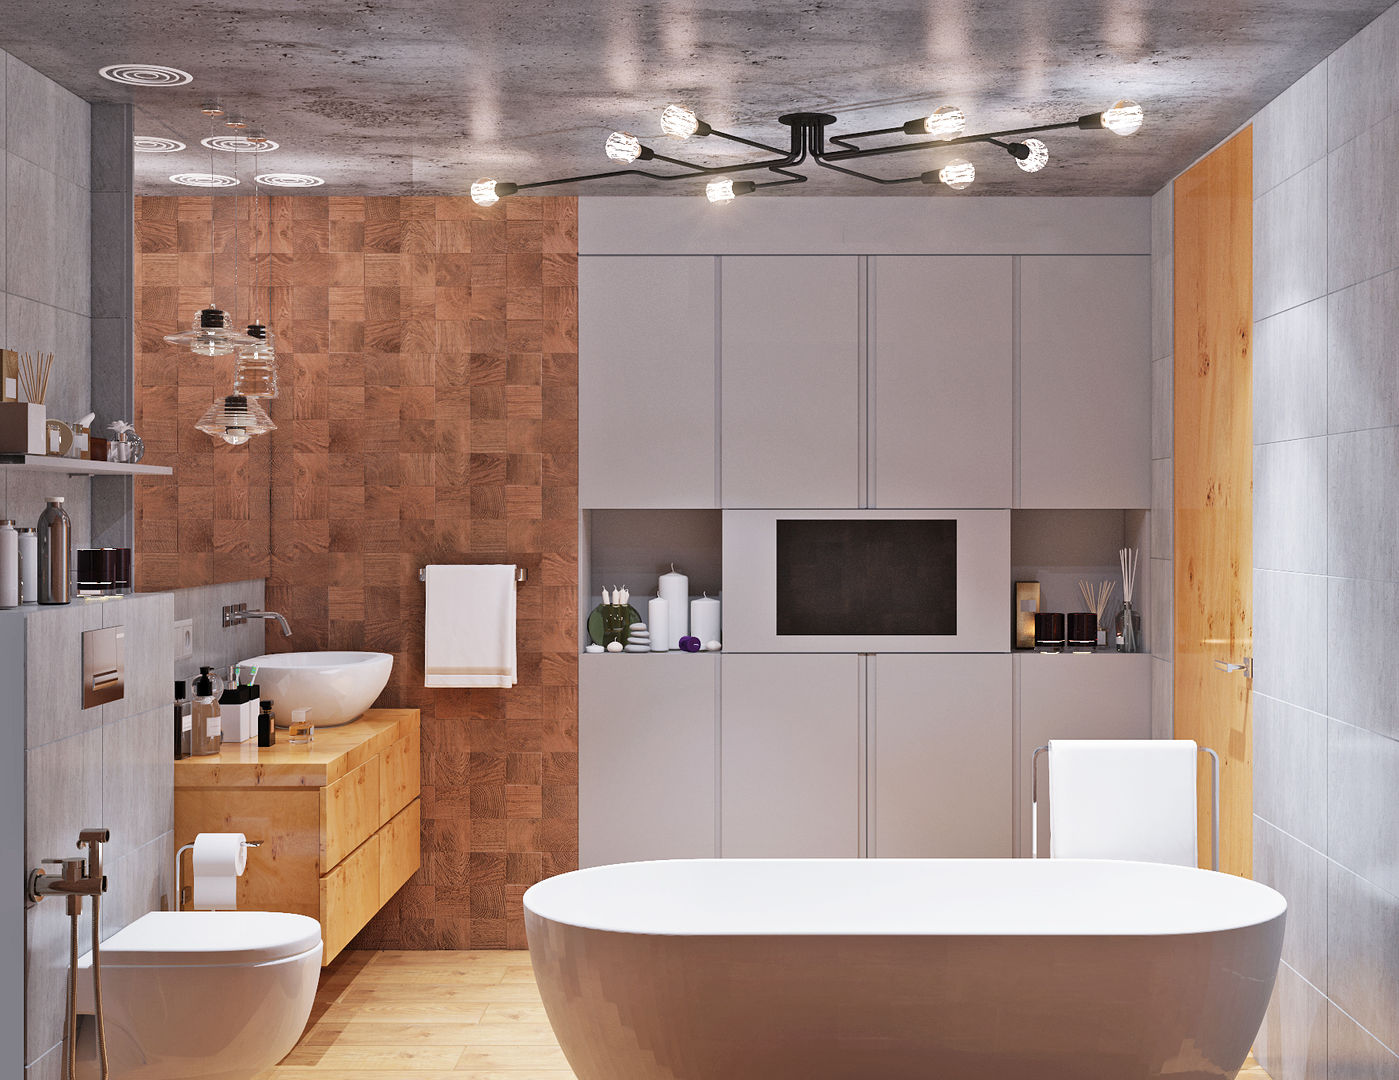 Душевая и ванная комнаты класса люкс, Студия дизайна ROMANIUK DESIGN Студия дизайна ROMANIUK DESIGN Bathroom